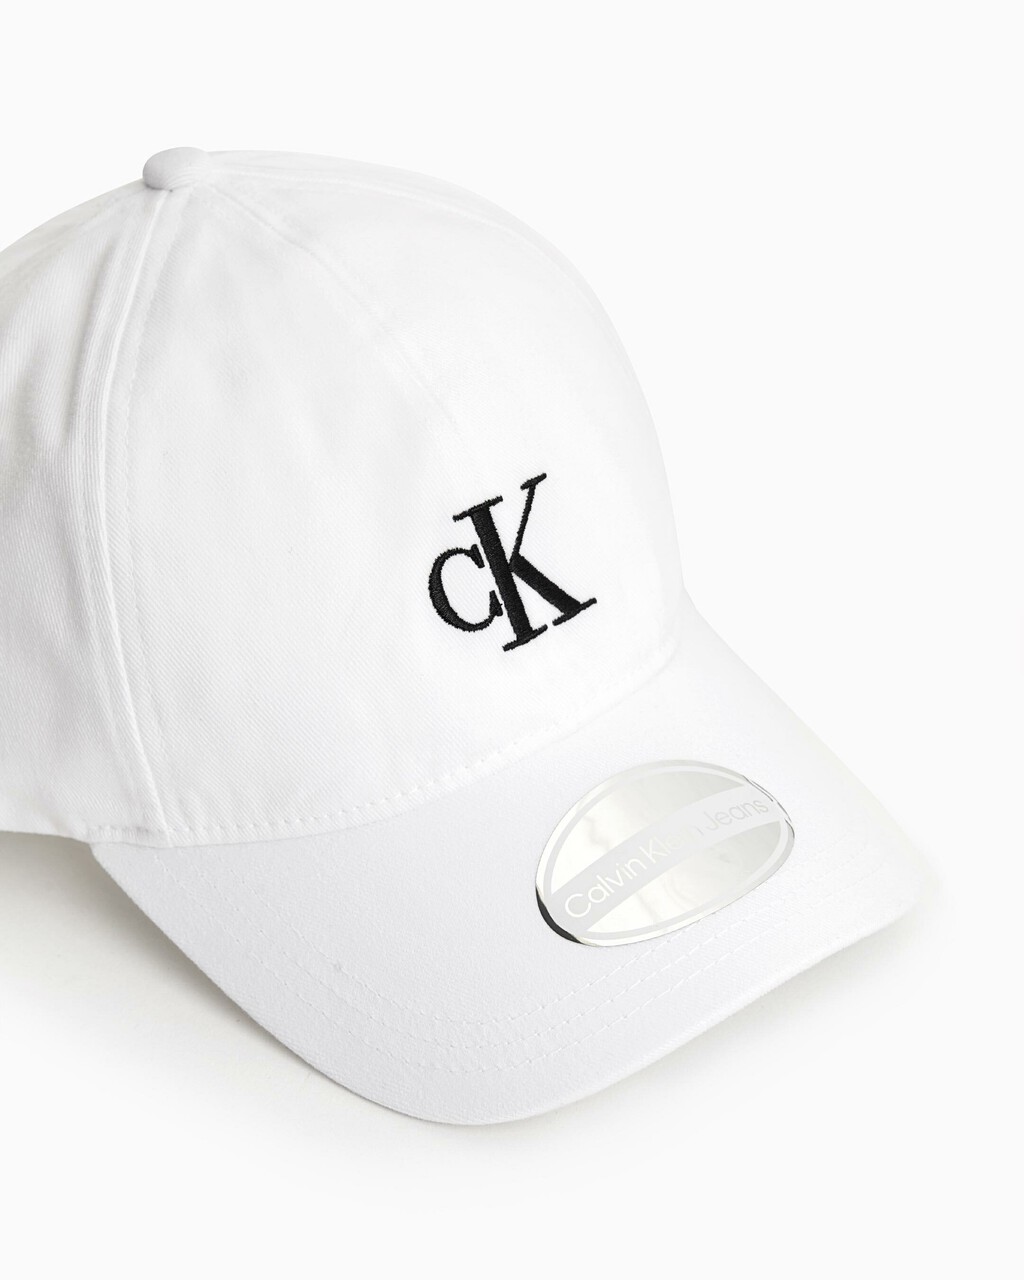 CK MONOGRAM COTTON CAP, BRIGHT WHITE, hi-res